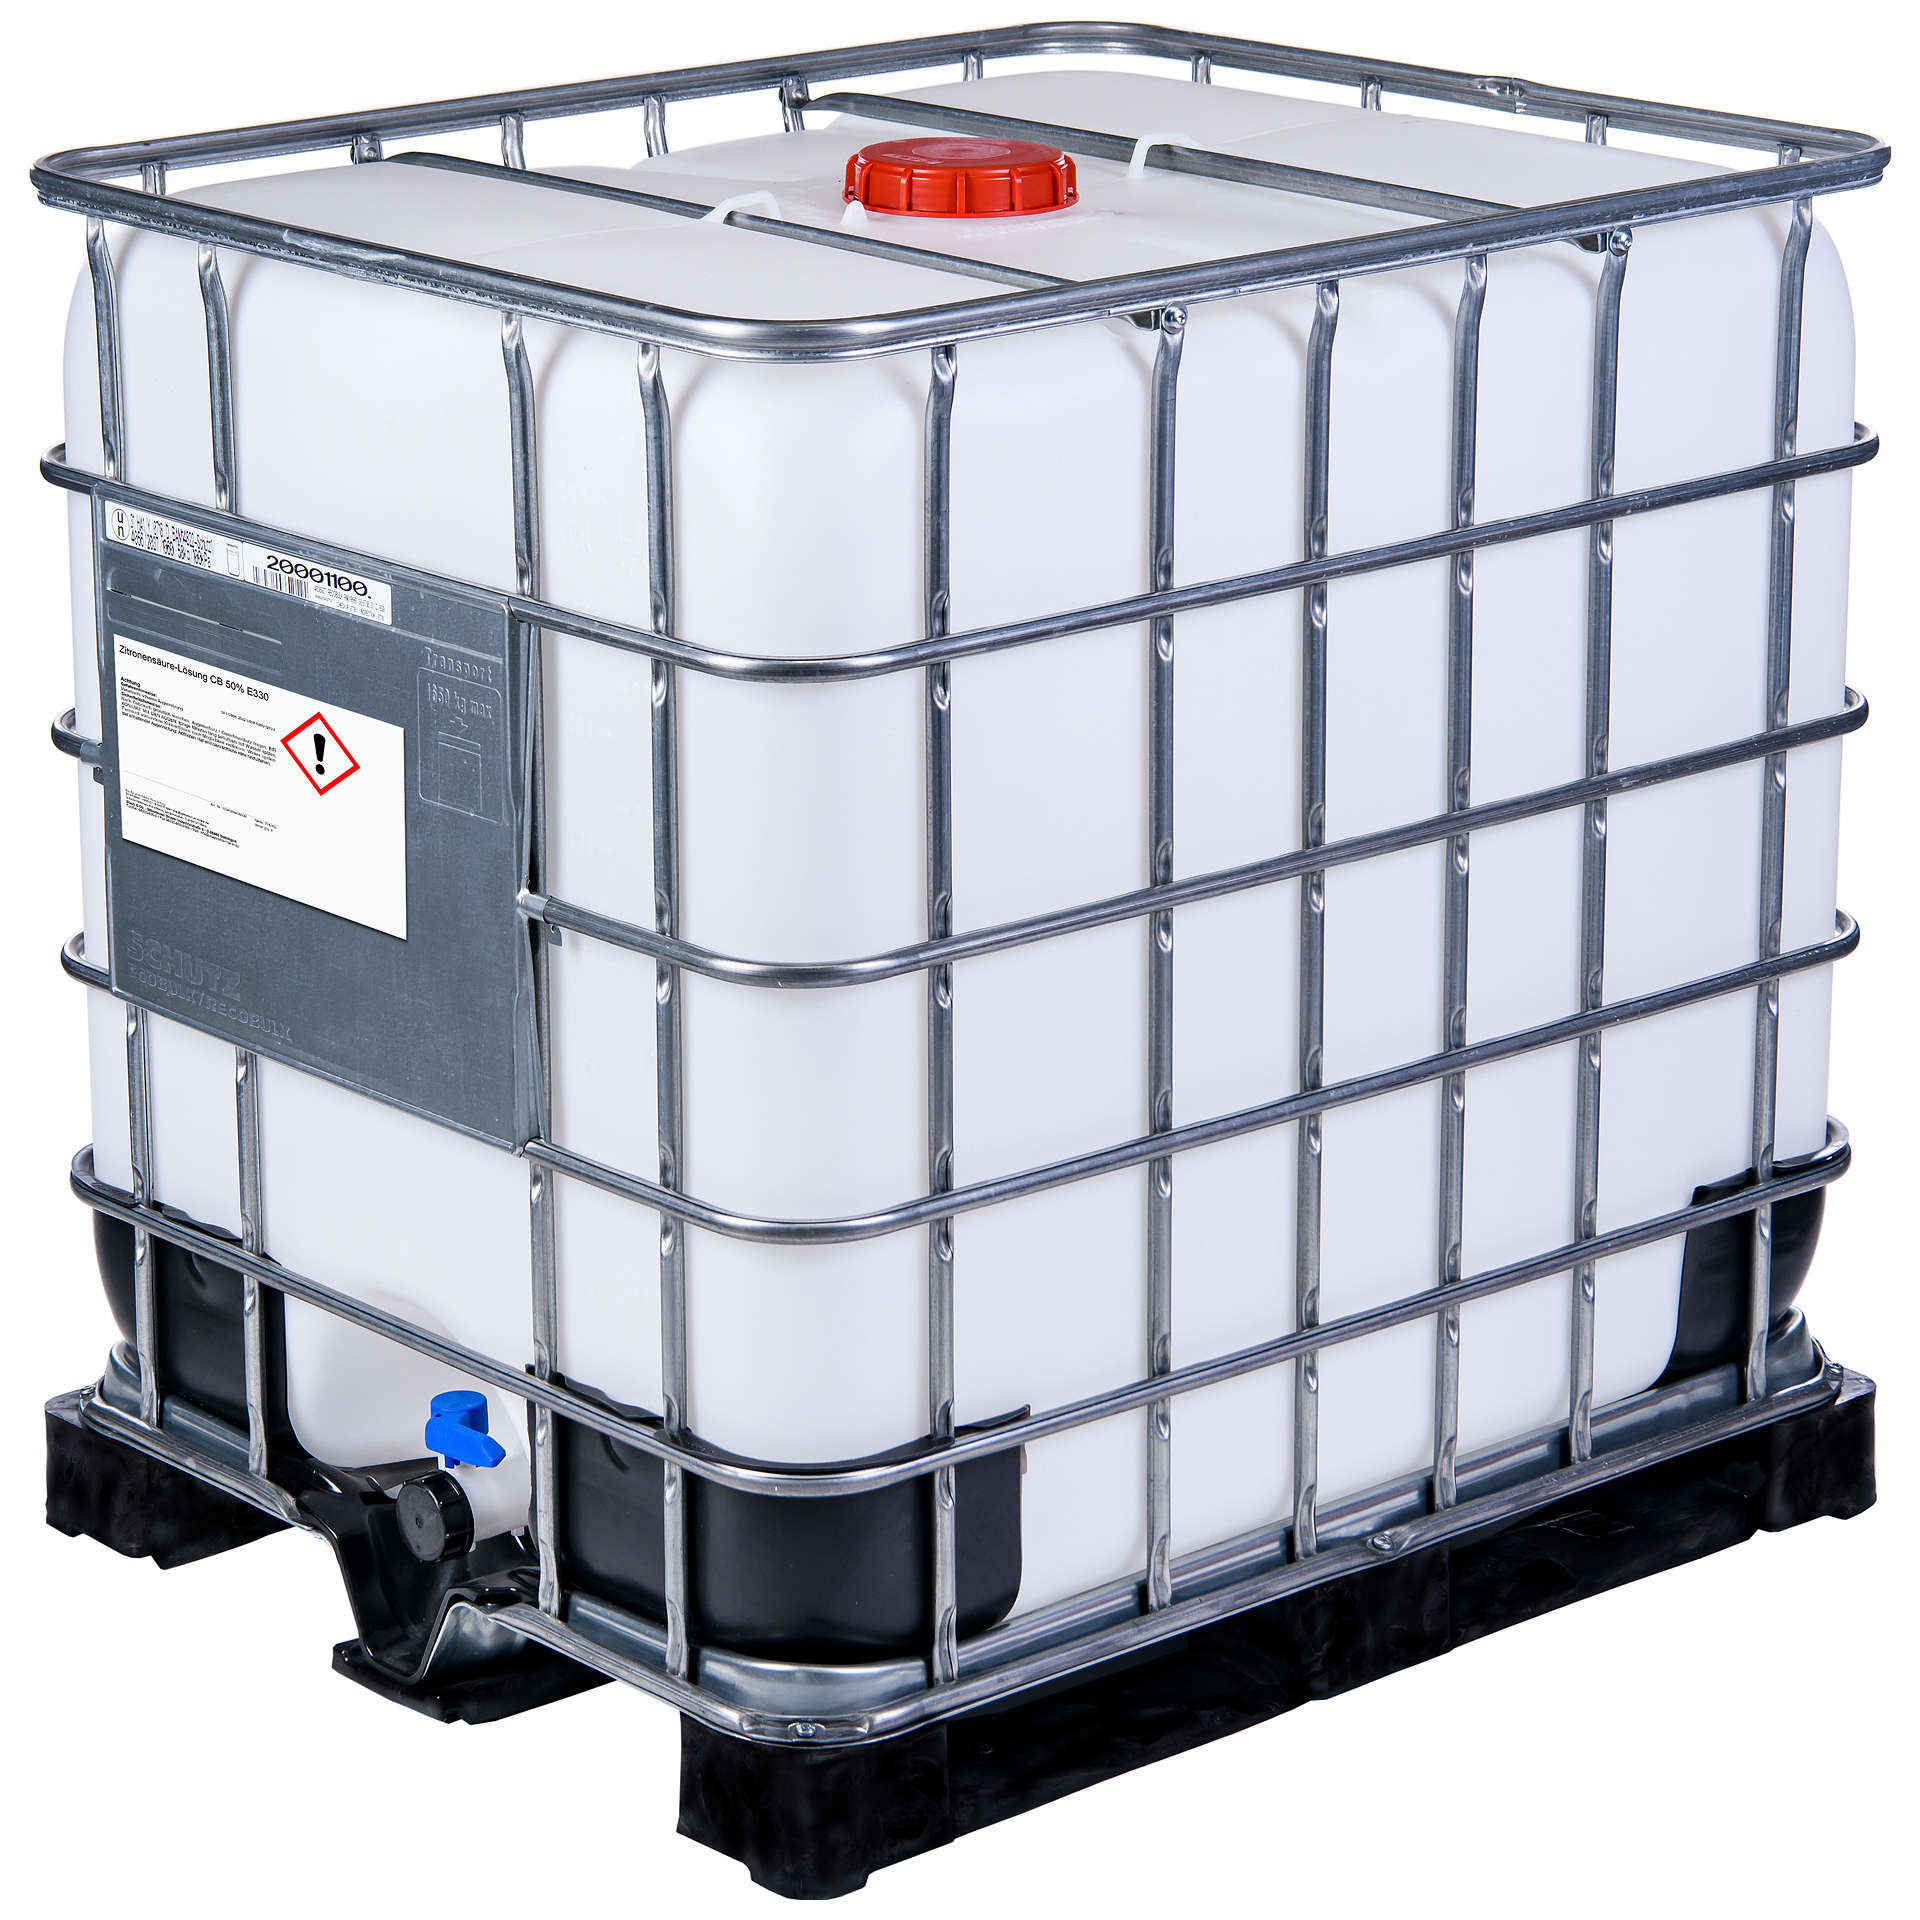 Zitronensäurelösung 50_E330 im Container